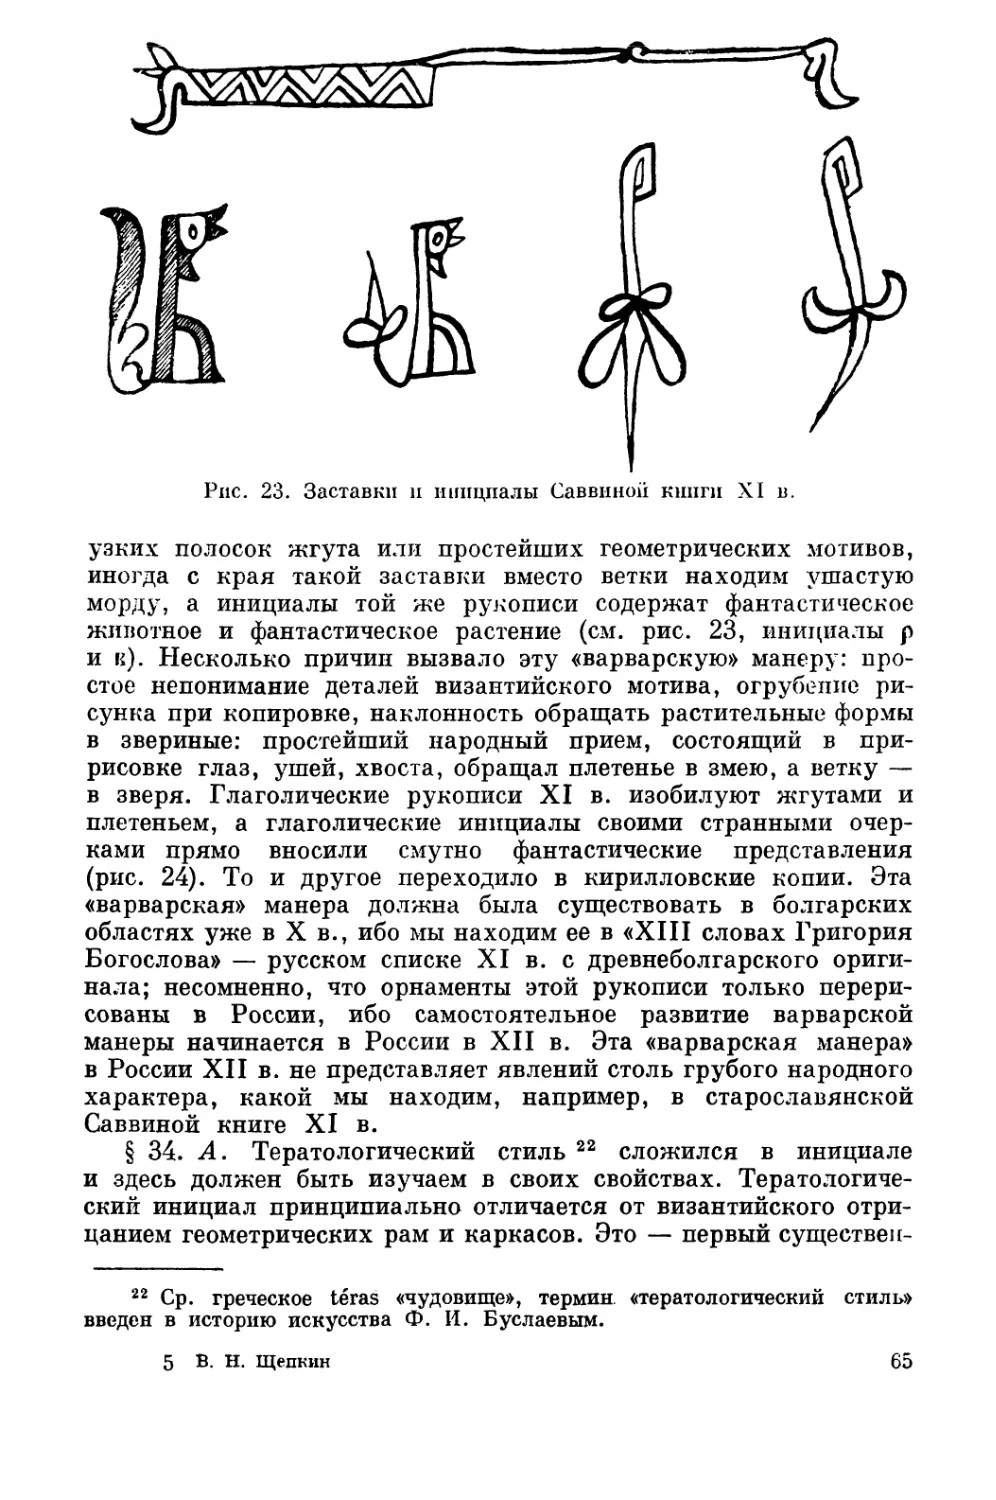 Тератологический стиль славянских рукописей